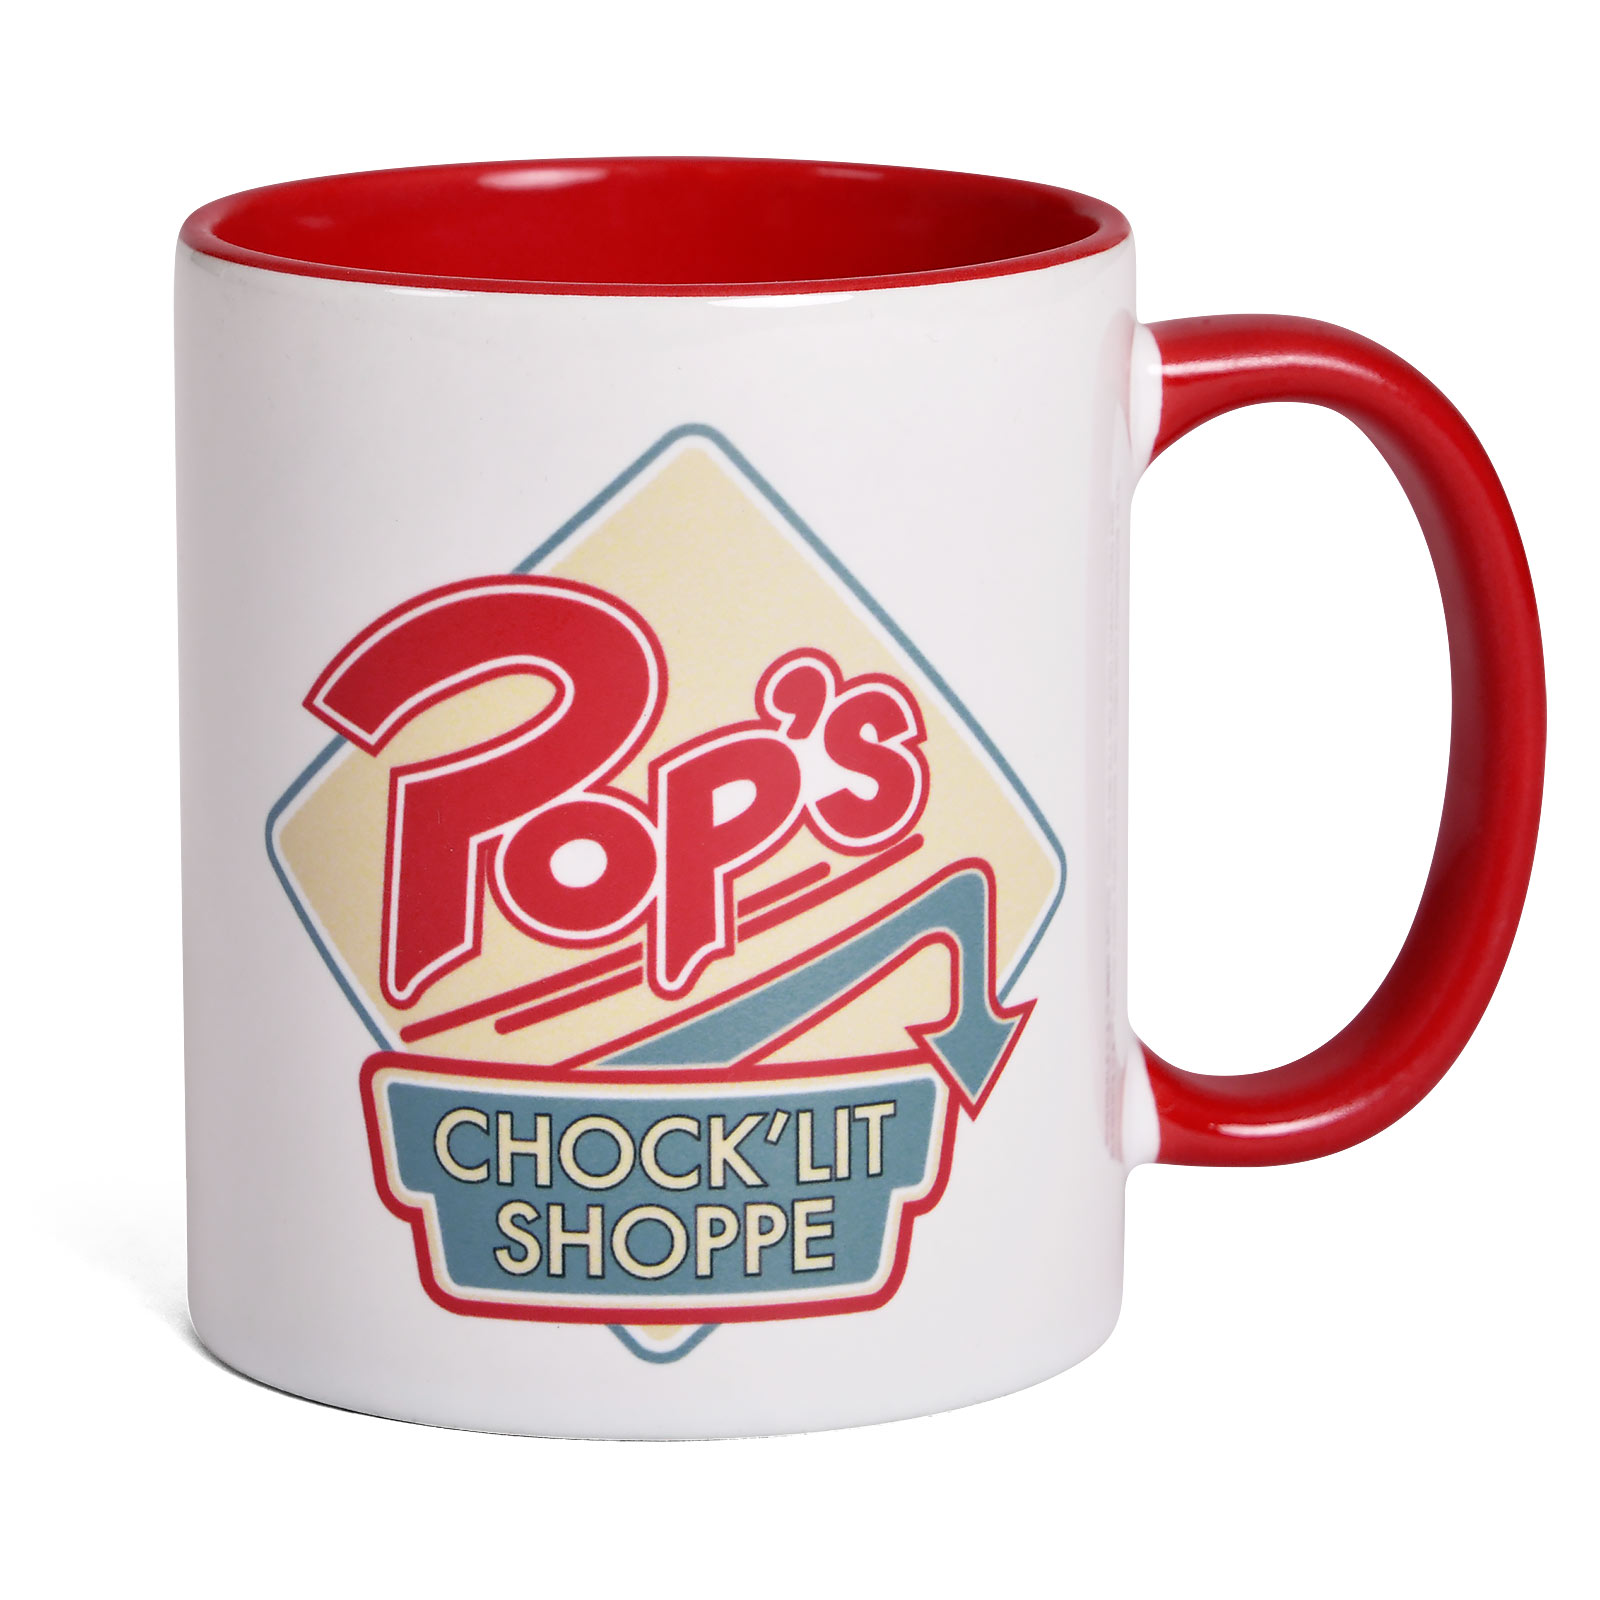 Riverdale - Pop's Chock'lit Shoppe Mug